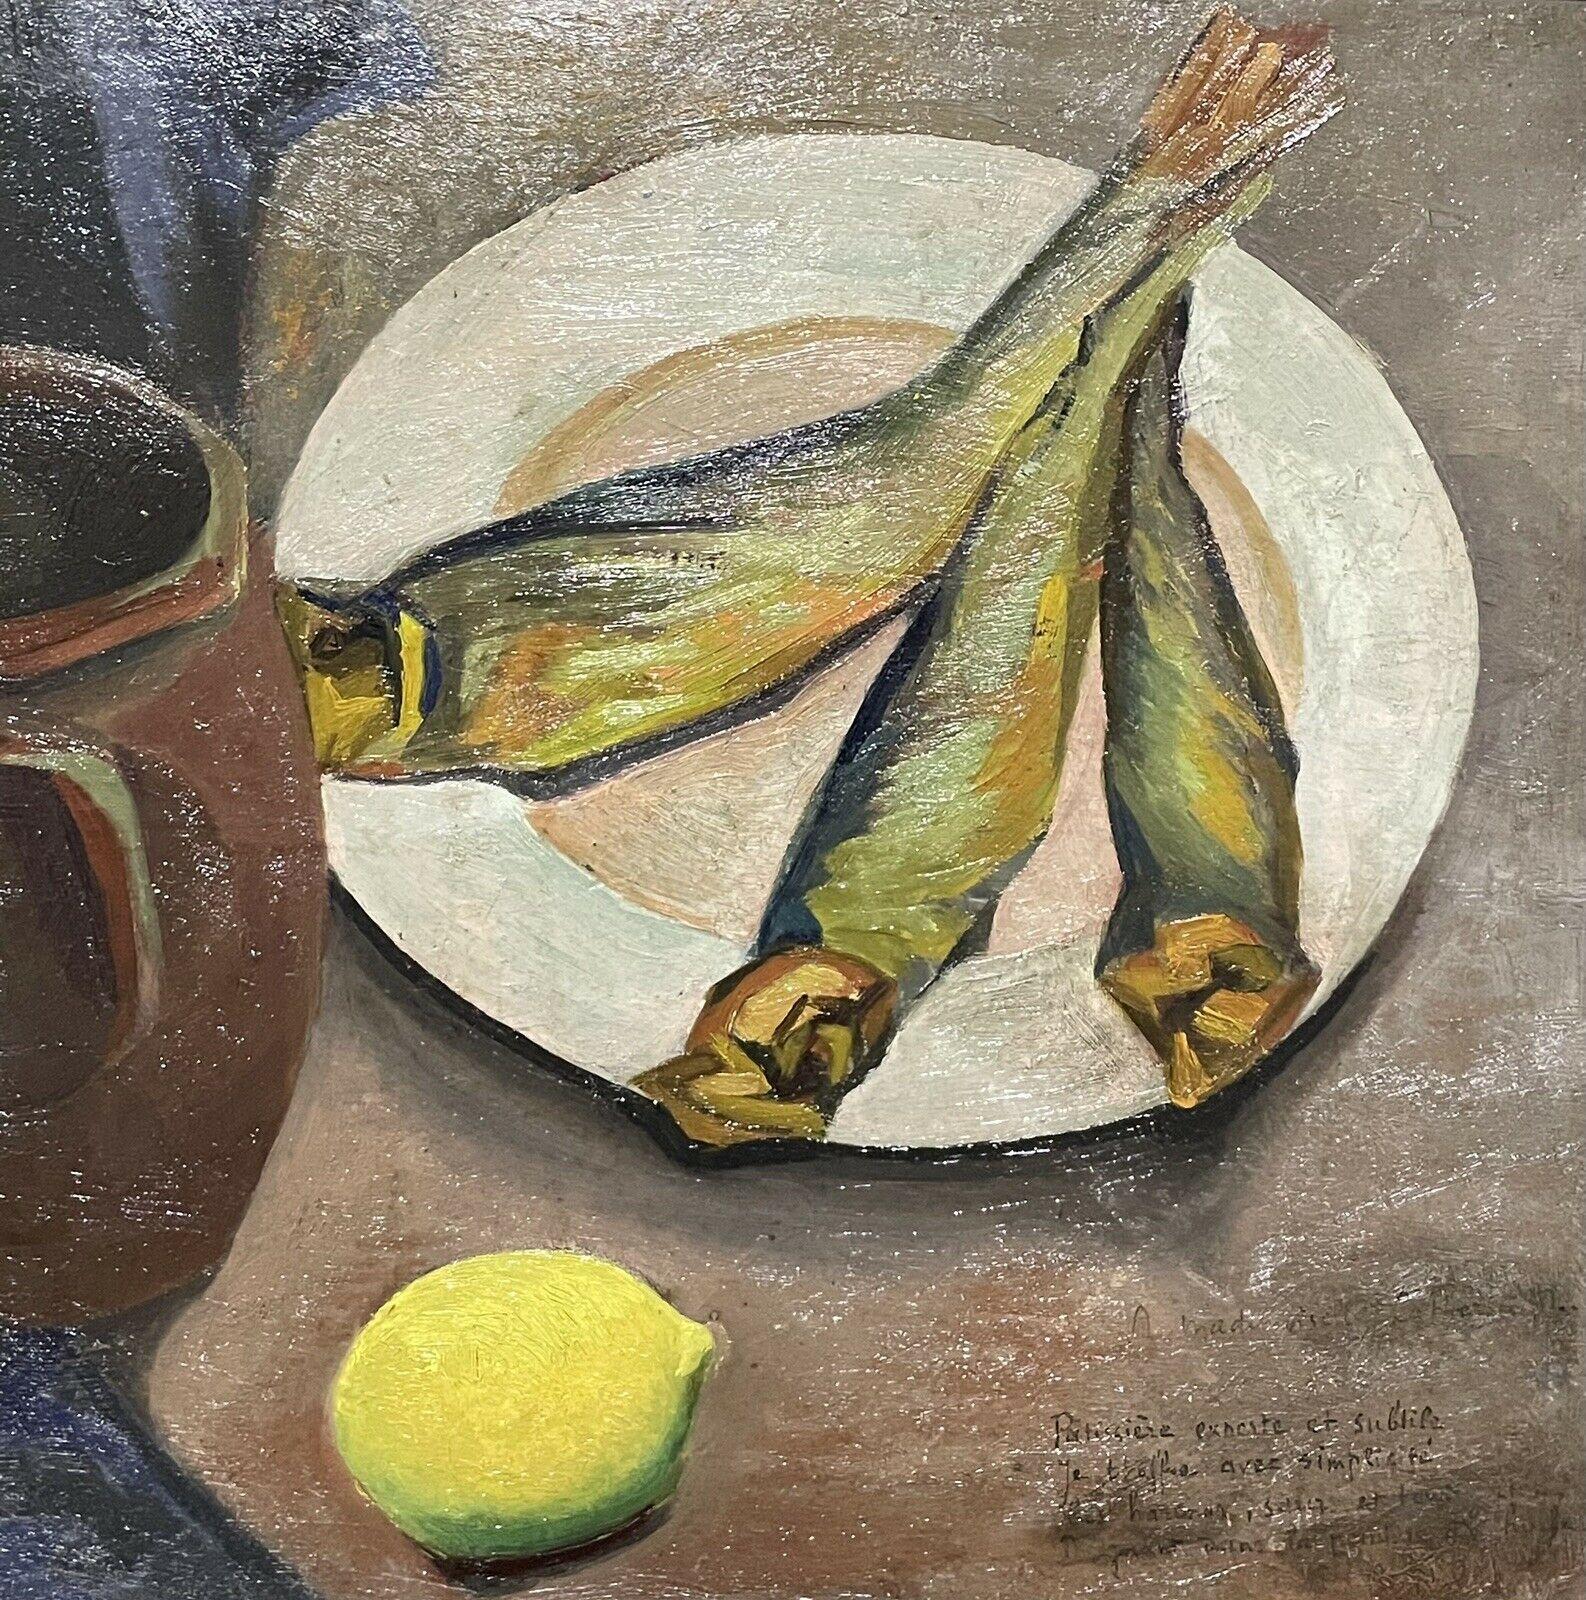 TABLE DE FISH LEMON KITCHEN FRANÇAIS MODERNIST DU 20{}E{} SIÈCLE - Cubisme Painting par Unknown